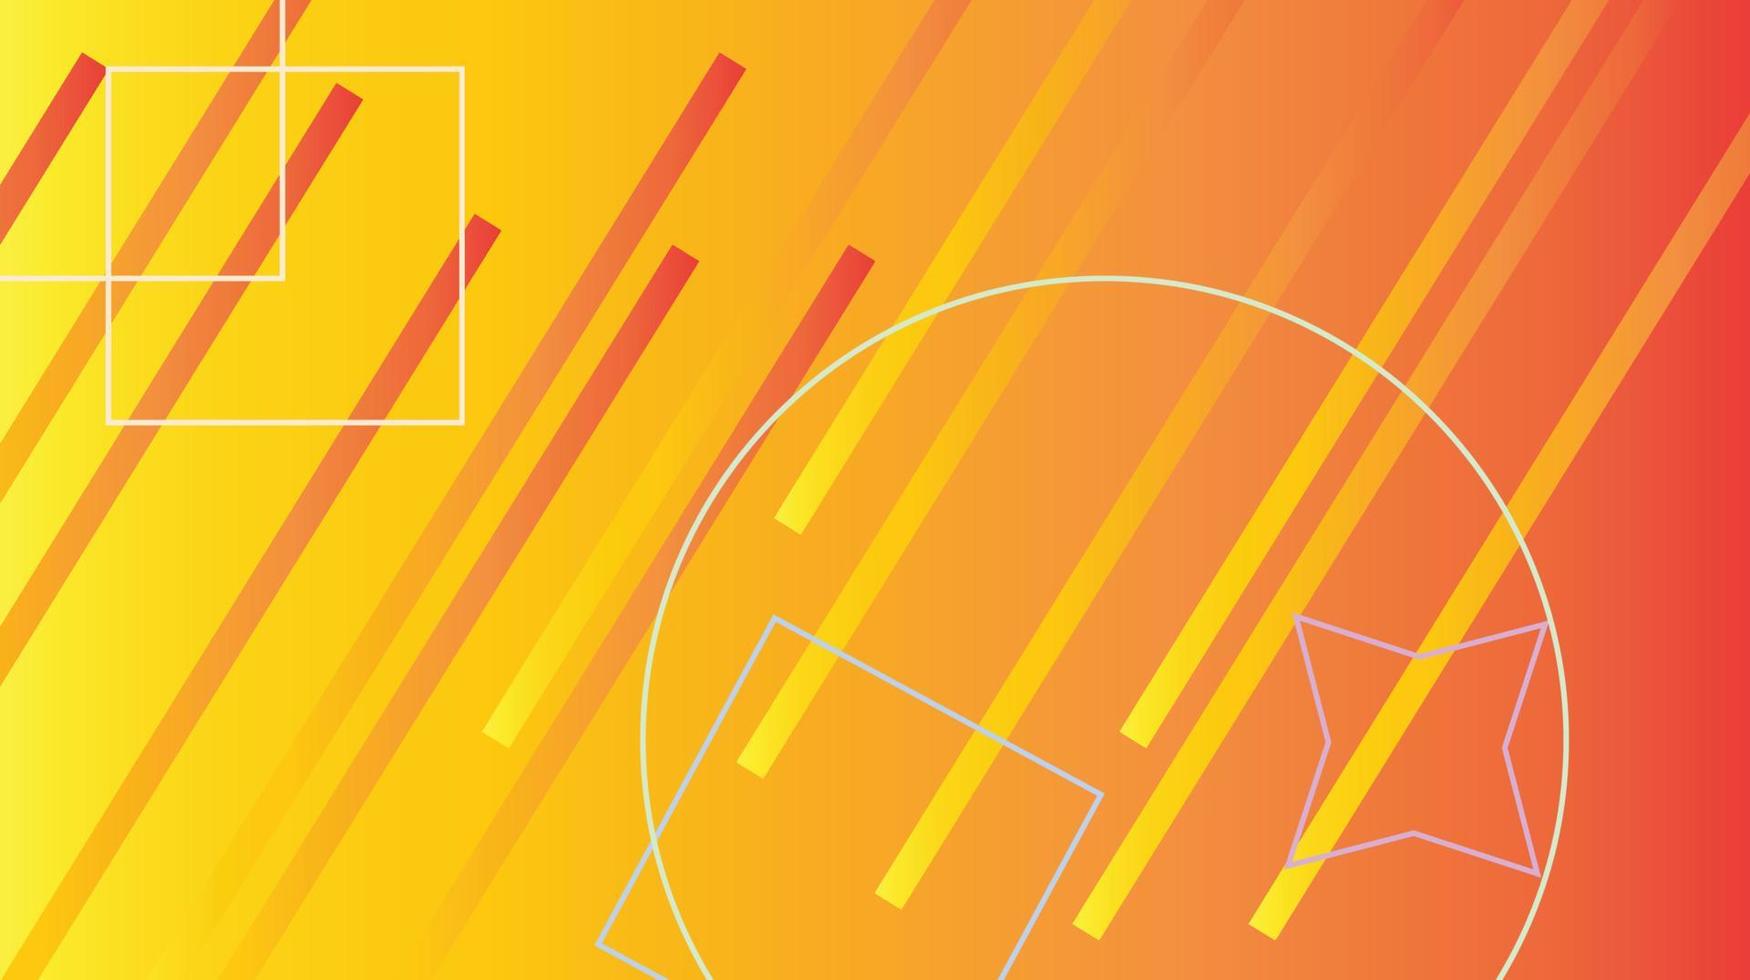 sfondo astratto arancione arte stile vettoriale sfondo arancione collage design contemporaneo moderno gradiente presentazioni banner illustrazione vettoriale ecc